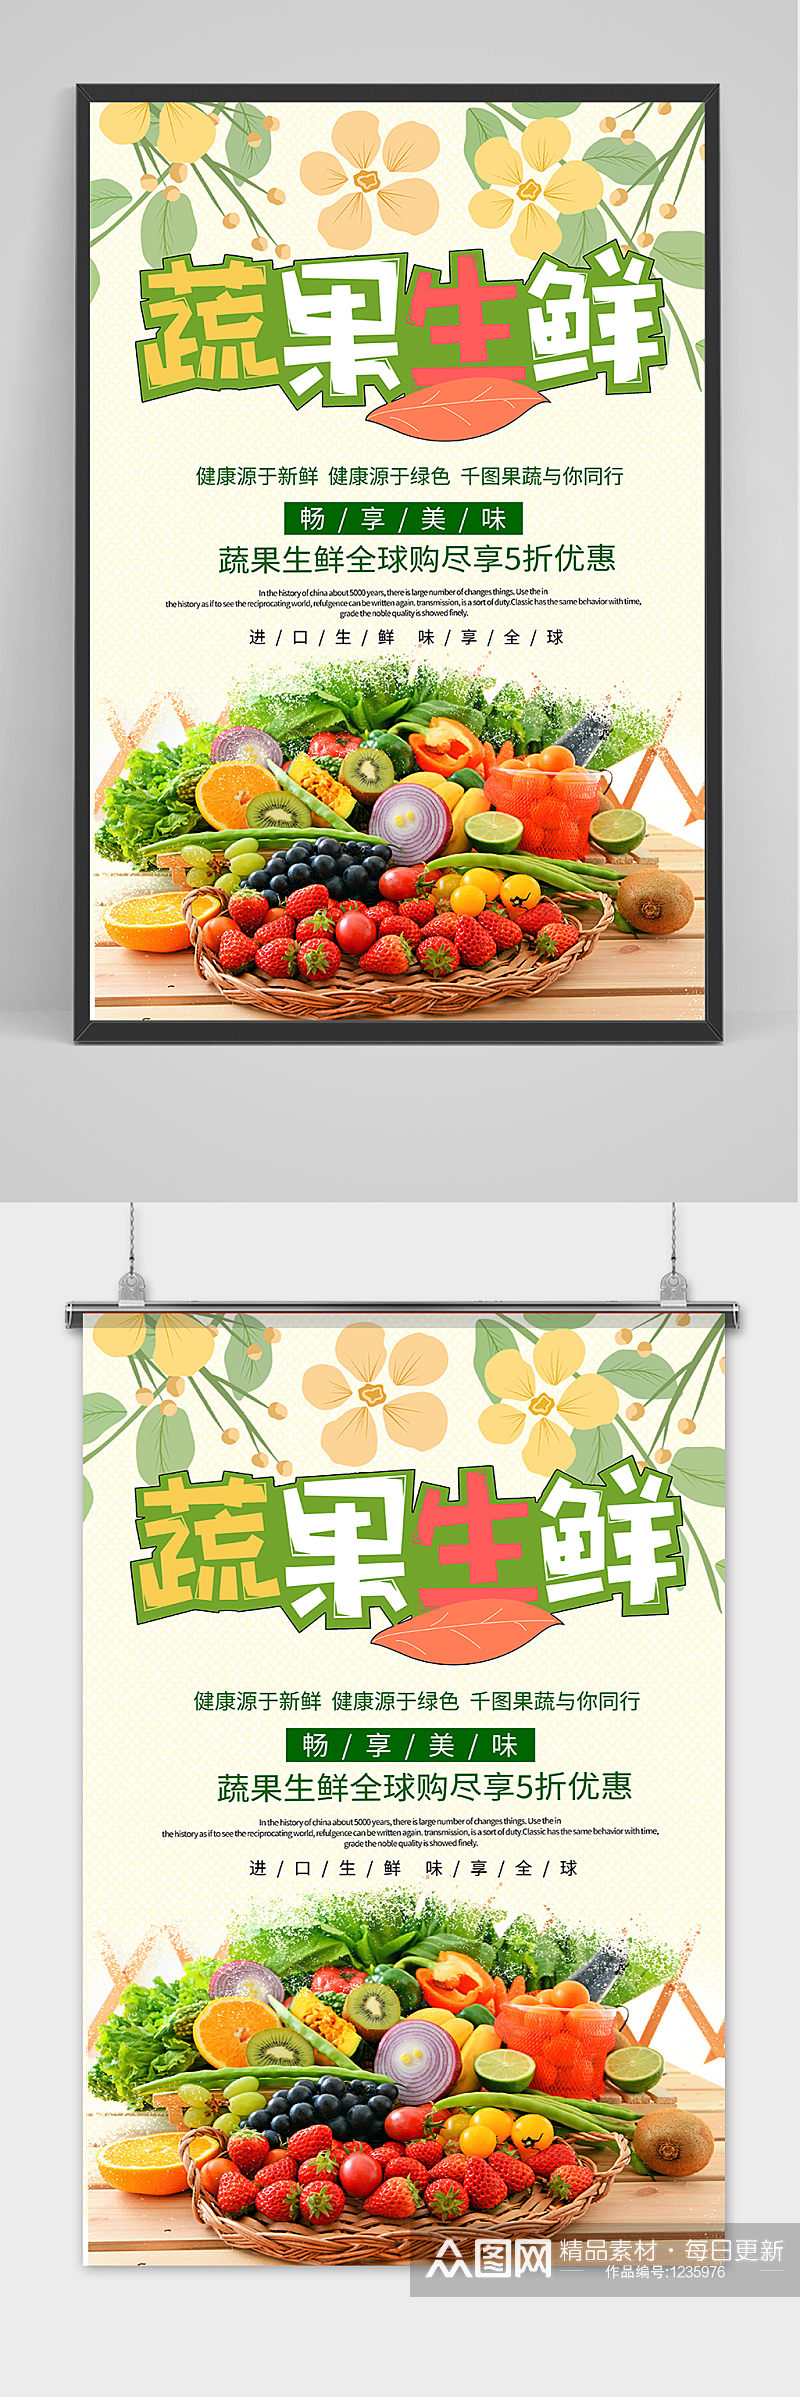 清新绿色生鲜果蔬宣传海报素材